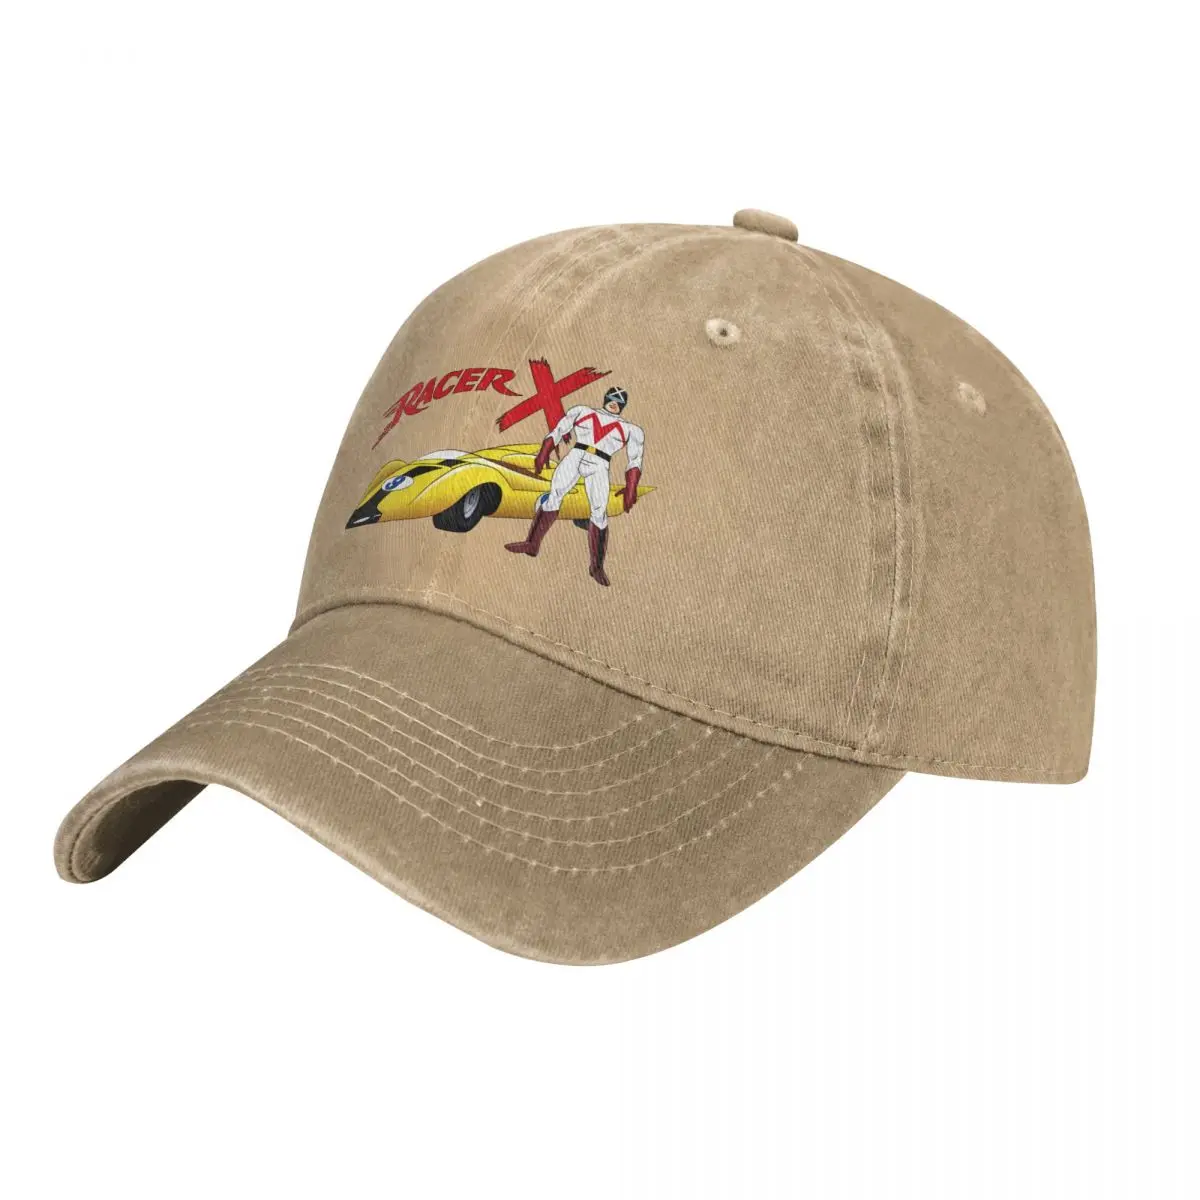 

Racer X Tribute to Original 60s Speed Racer Cartoon Series Cap Cowboy Hat hat luxury brand hat for men Women's